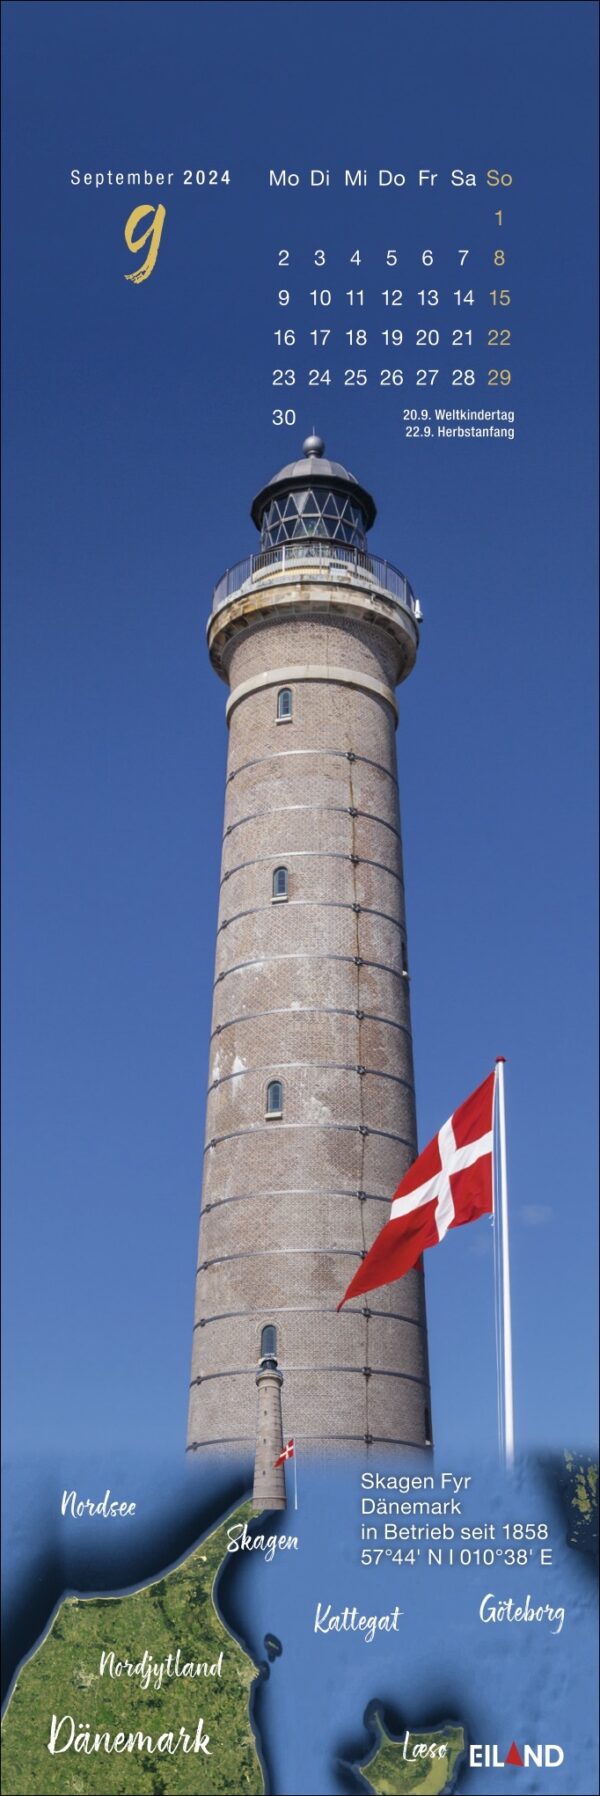 LilleEiland - Kalender 2024 präsentiert einen bezaubernden Kalender für 2024 mit einem faszinierenden Leuchtturm und einer leuchtenden Flagge.